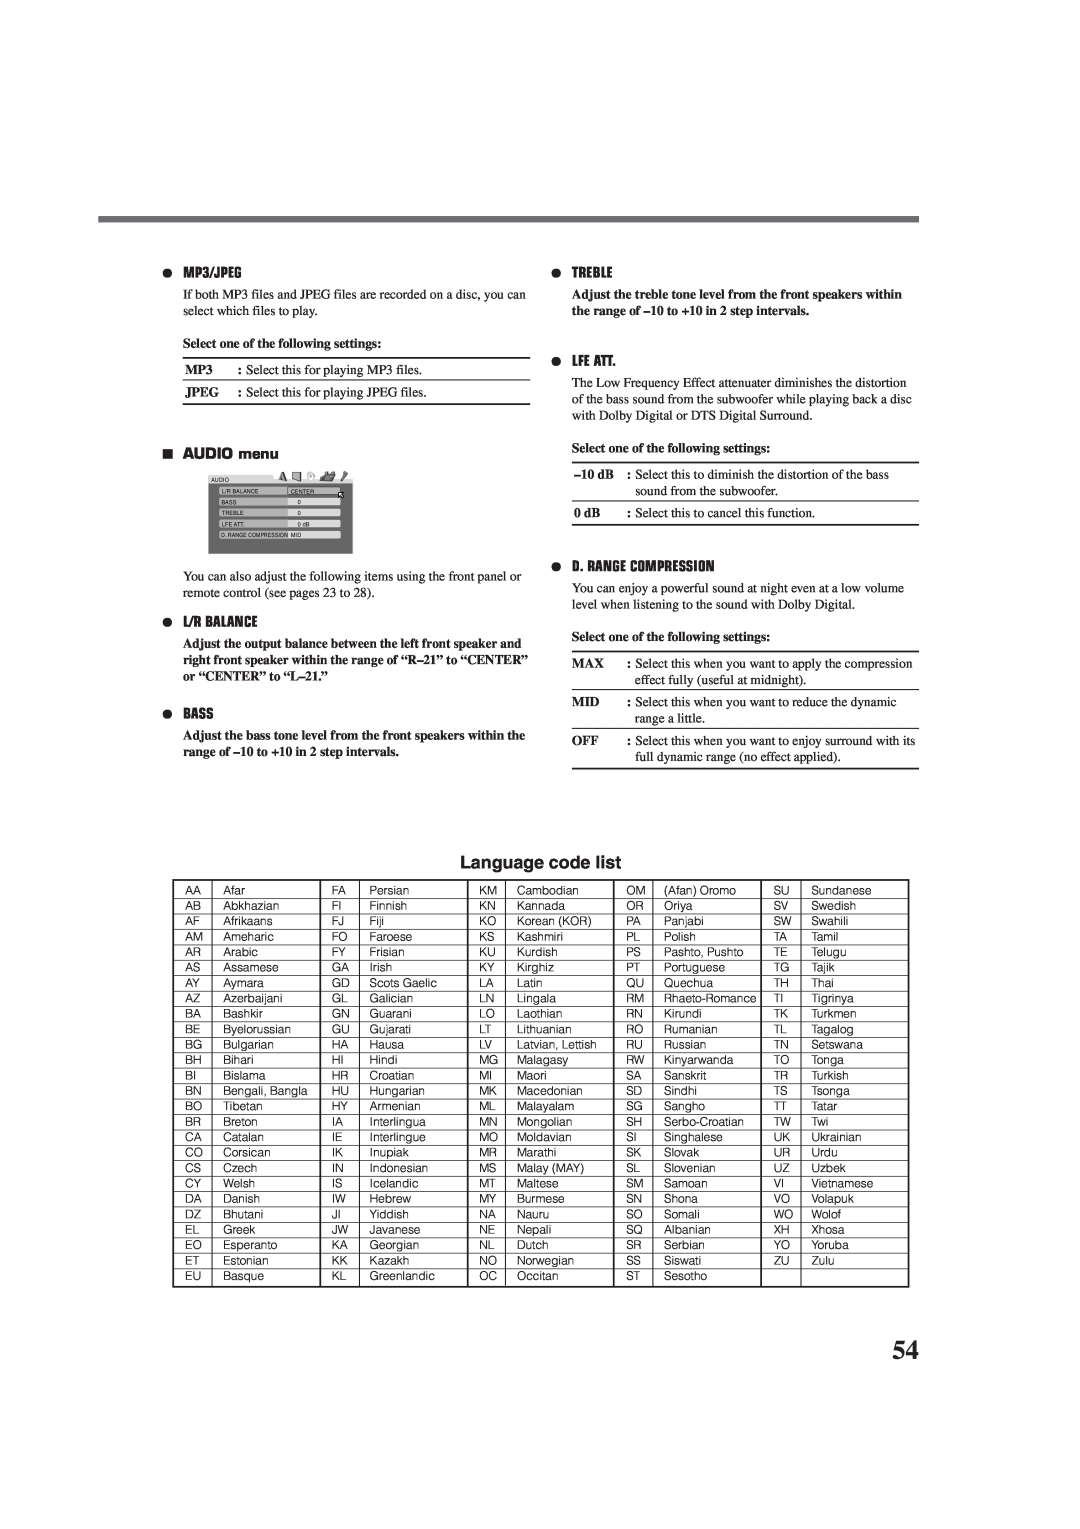 JVC RX-DV3RSL Language code list, ¶MP3/JPEG, 7AUDIO menu, ¶L/R Balance, ¶Bass, ¶Treble, ¶Lfe Att, ¶D. Range Compression 